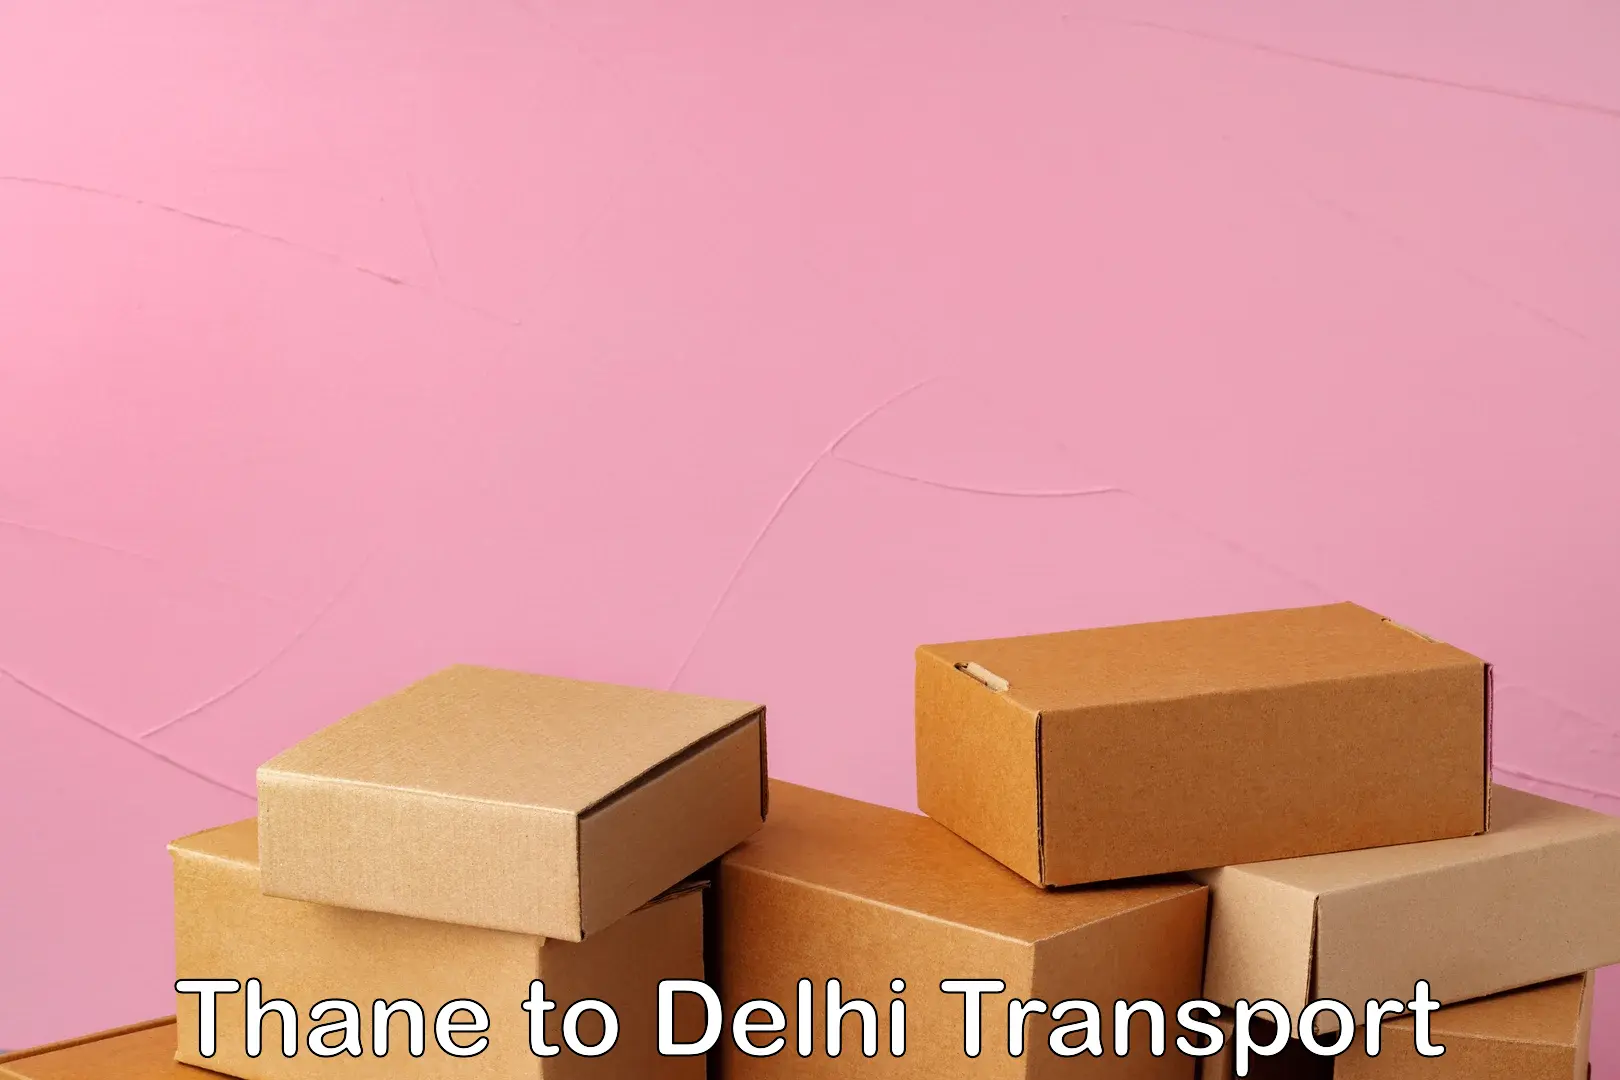 Delivery service Thane to Delhi